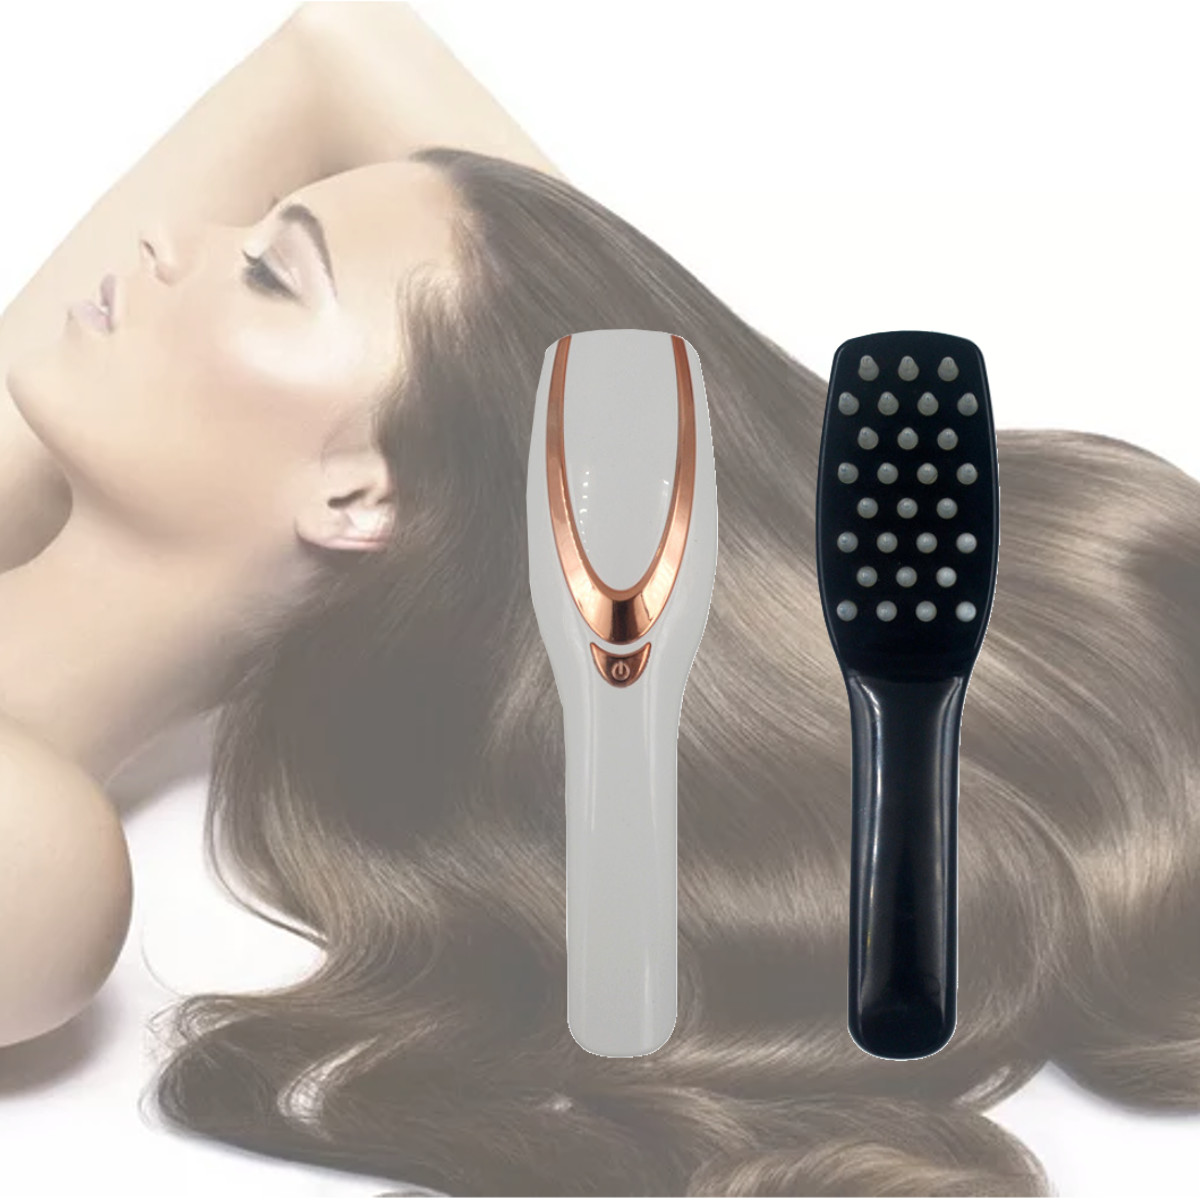 Scalp Massager Anti Hair Loss Hair G End 8 25 2020 1 15 Pm